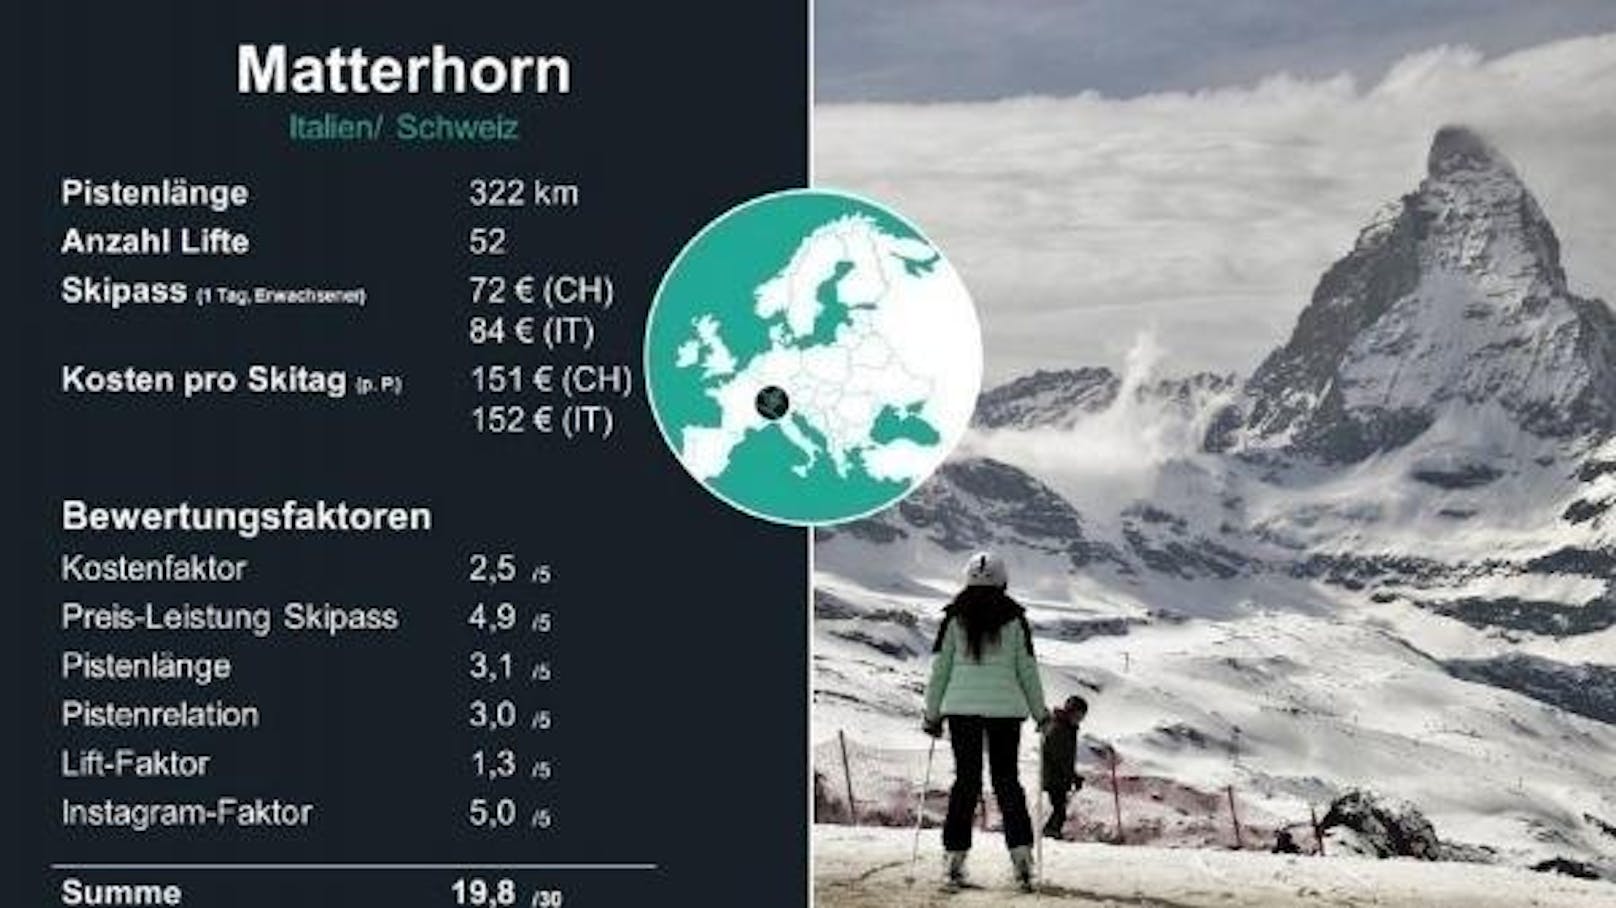 <b>2. Platz: Matterhorn</b>

Das Matterhorn verteilt sich auf zwei Länder: die Schweiz und Italien. Es ist mit einer Höhe von 1.582 bis 3.899 Metern das höchste Skigebiet der Alpen. Auch auf Instagram ist die Region überdurchschnittlich beliebt als Fotomotiv. Dort gibt es über 648.000 Beiträge unter #matterhorn.